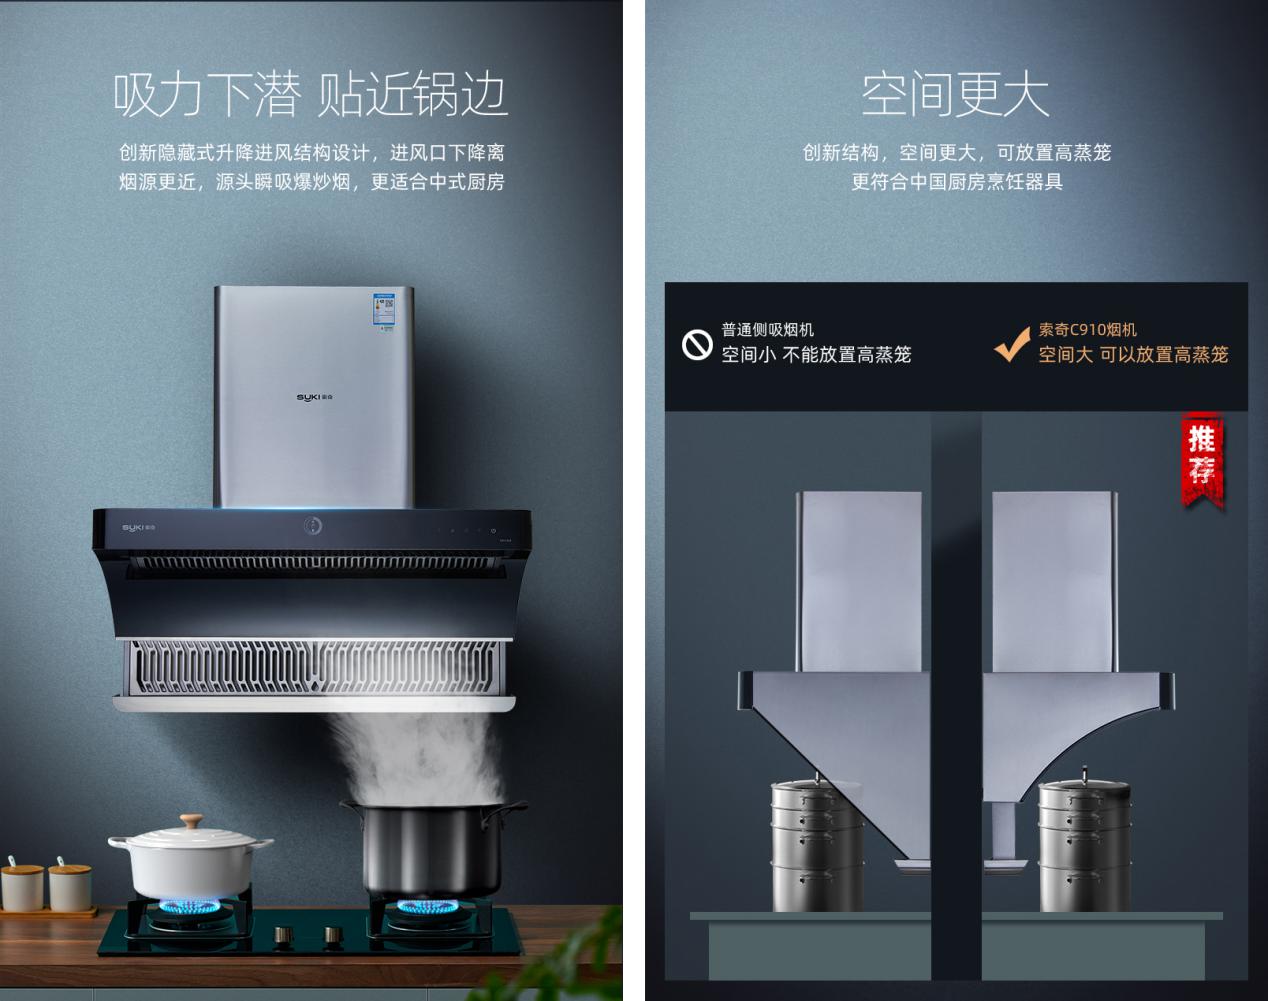 新中式厨房的新选择，索奇C910潜吸式油烟机与厨房融为一体！